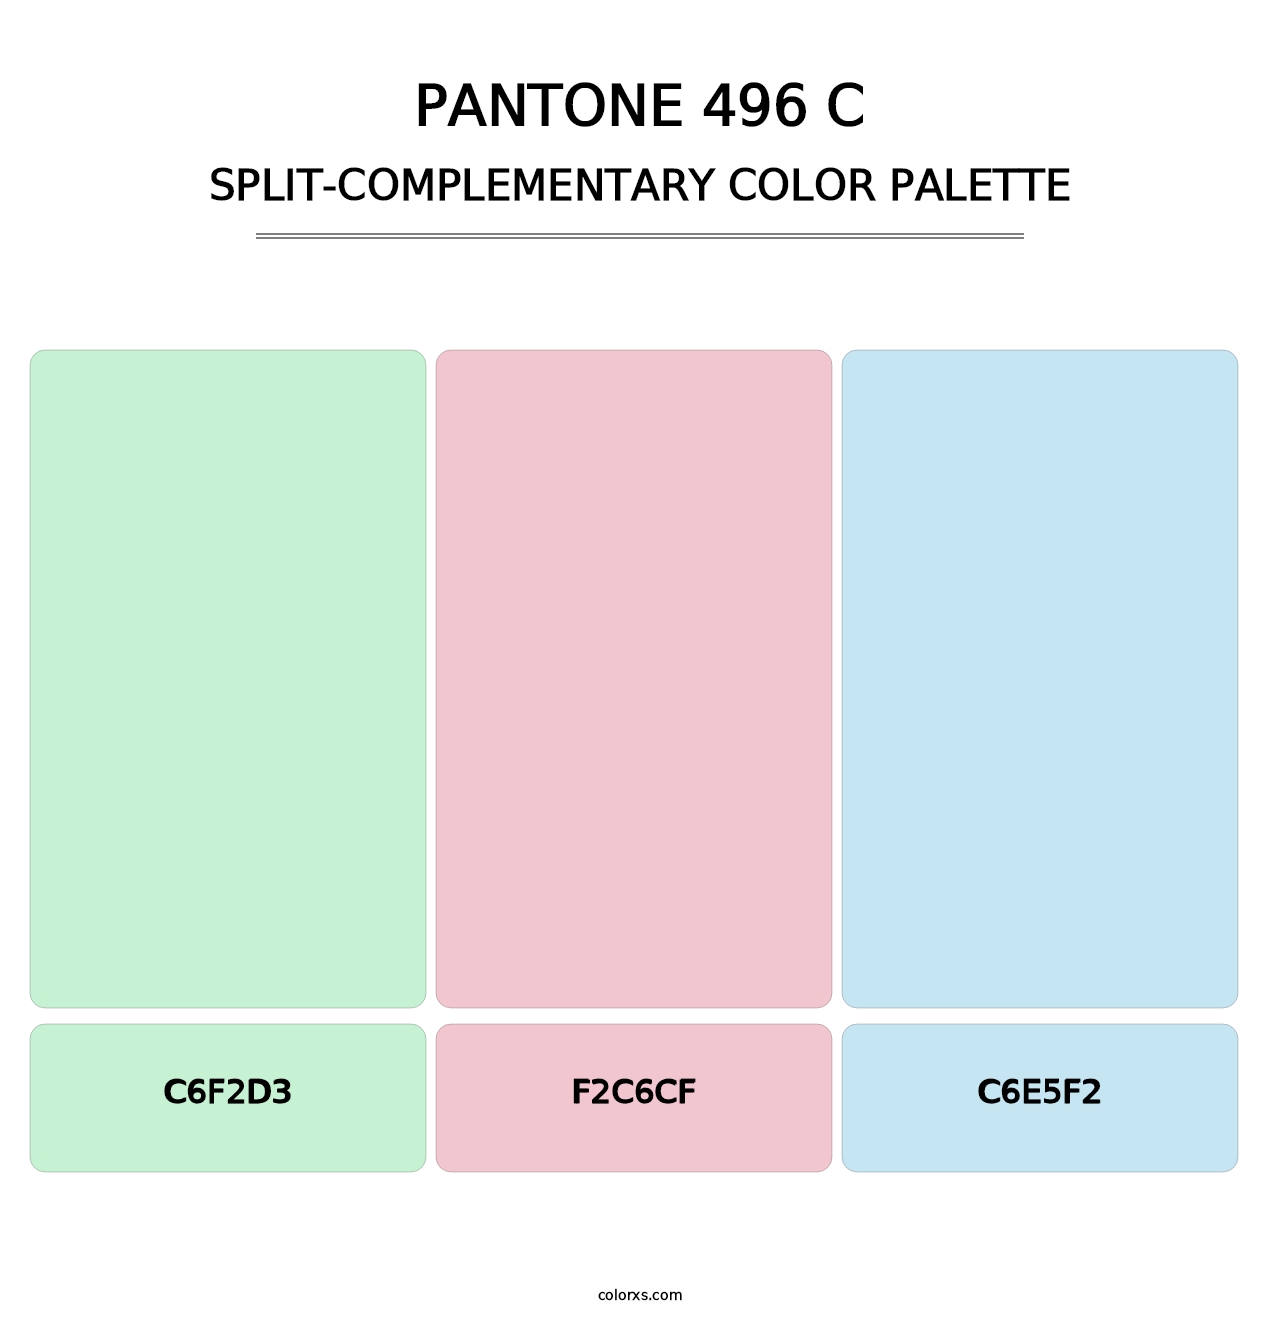 PANTONE 496 C - Split-Complementary Color Palette